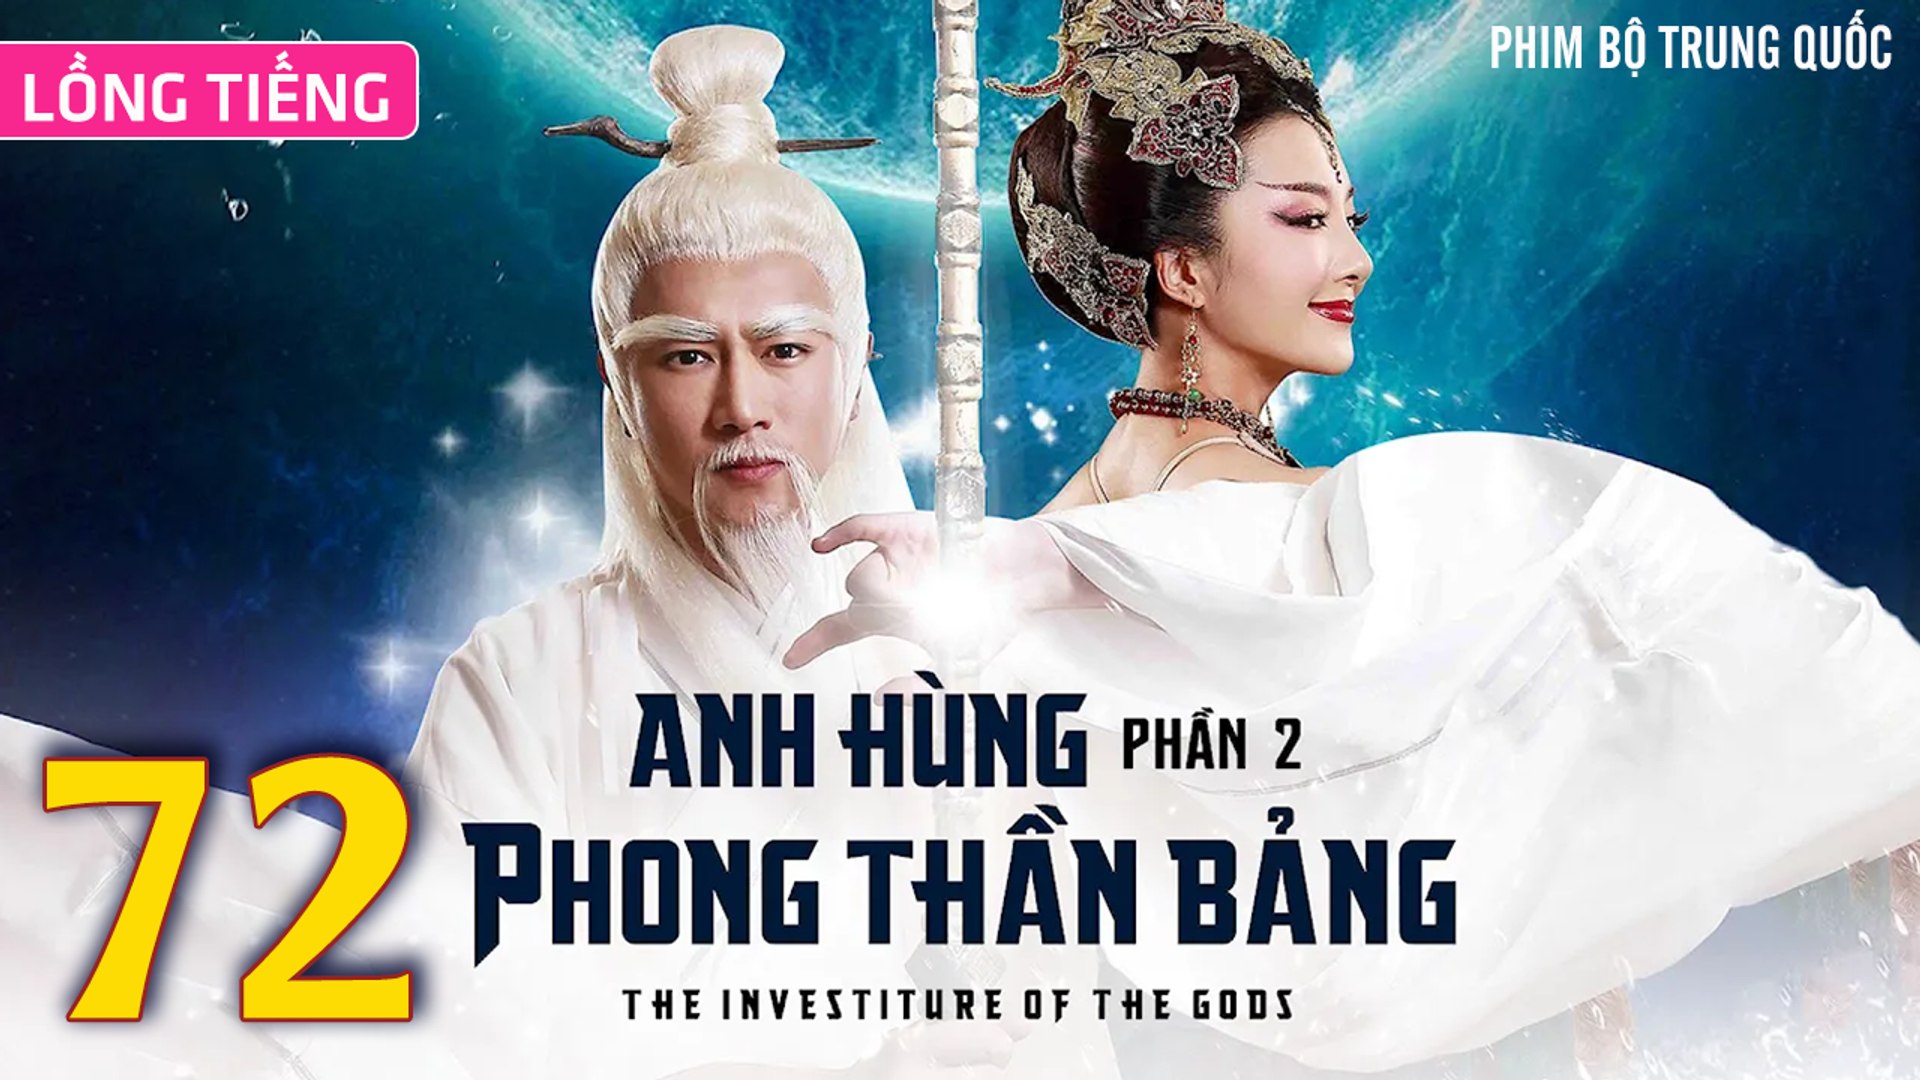 ⁣Phim Bộ Hay: ANH HÙNG PHONG THẦN BẢNG 2 - Tập 72 (Lồng Tiếng) | Phim Bộ Trung Quốc Hay Nhất 2023